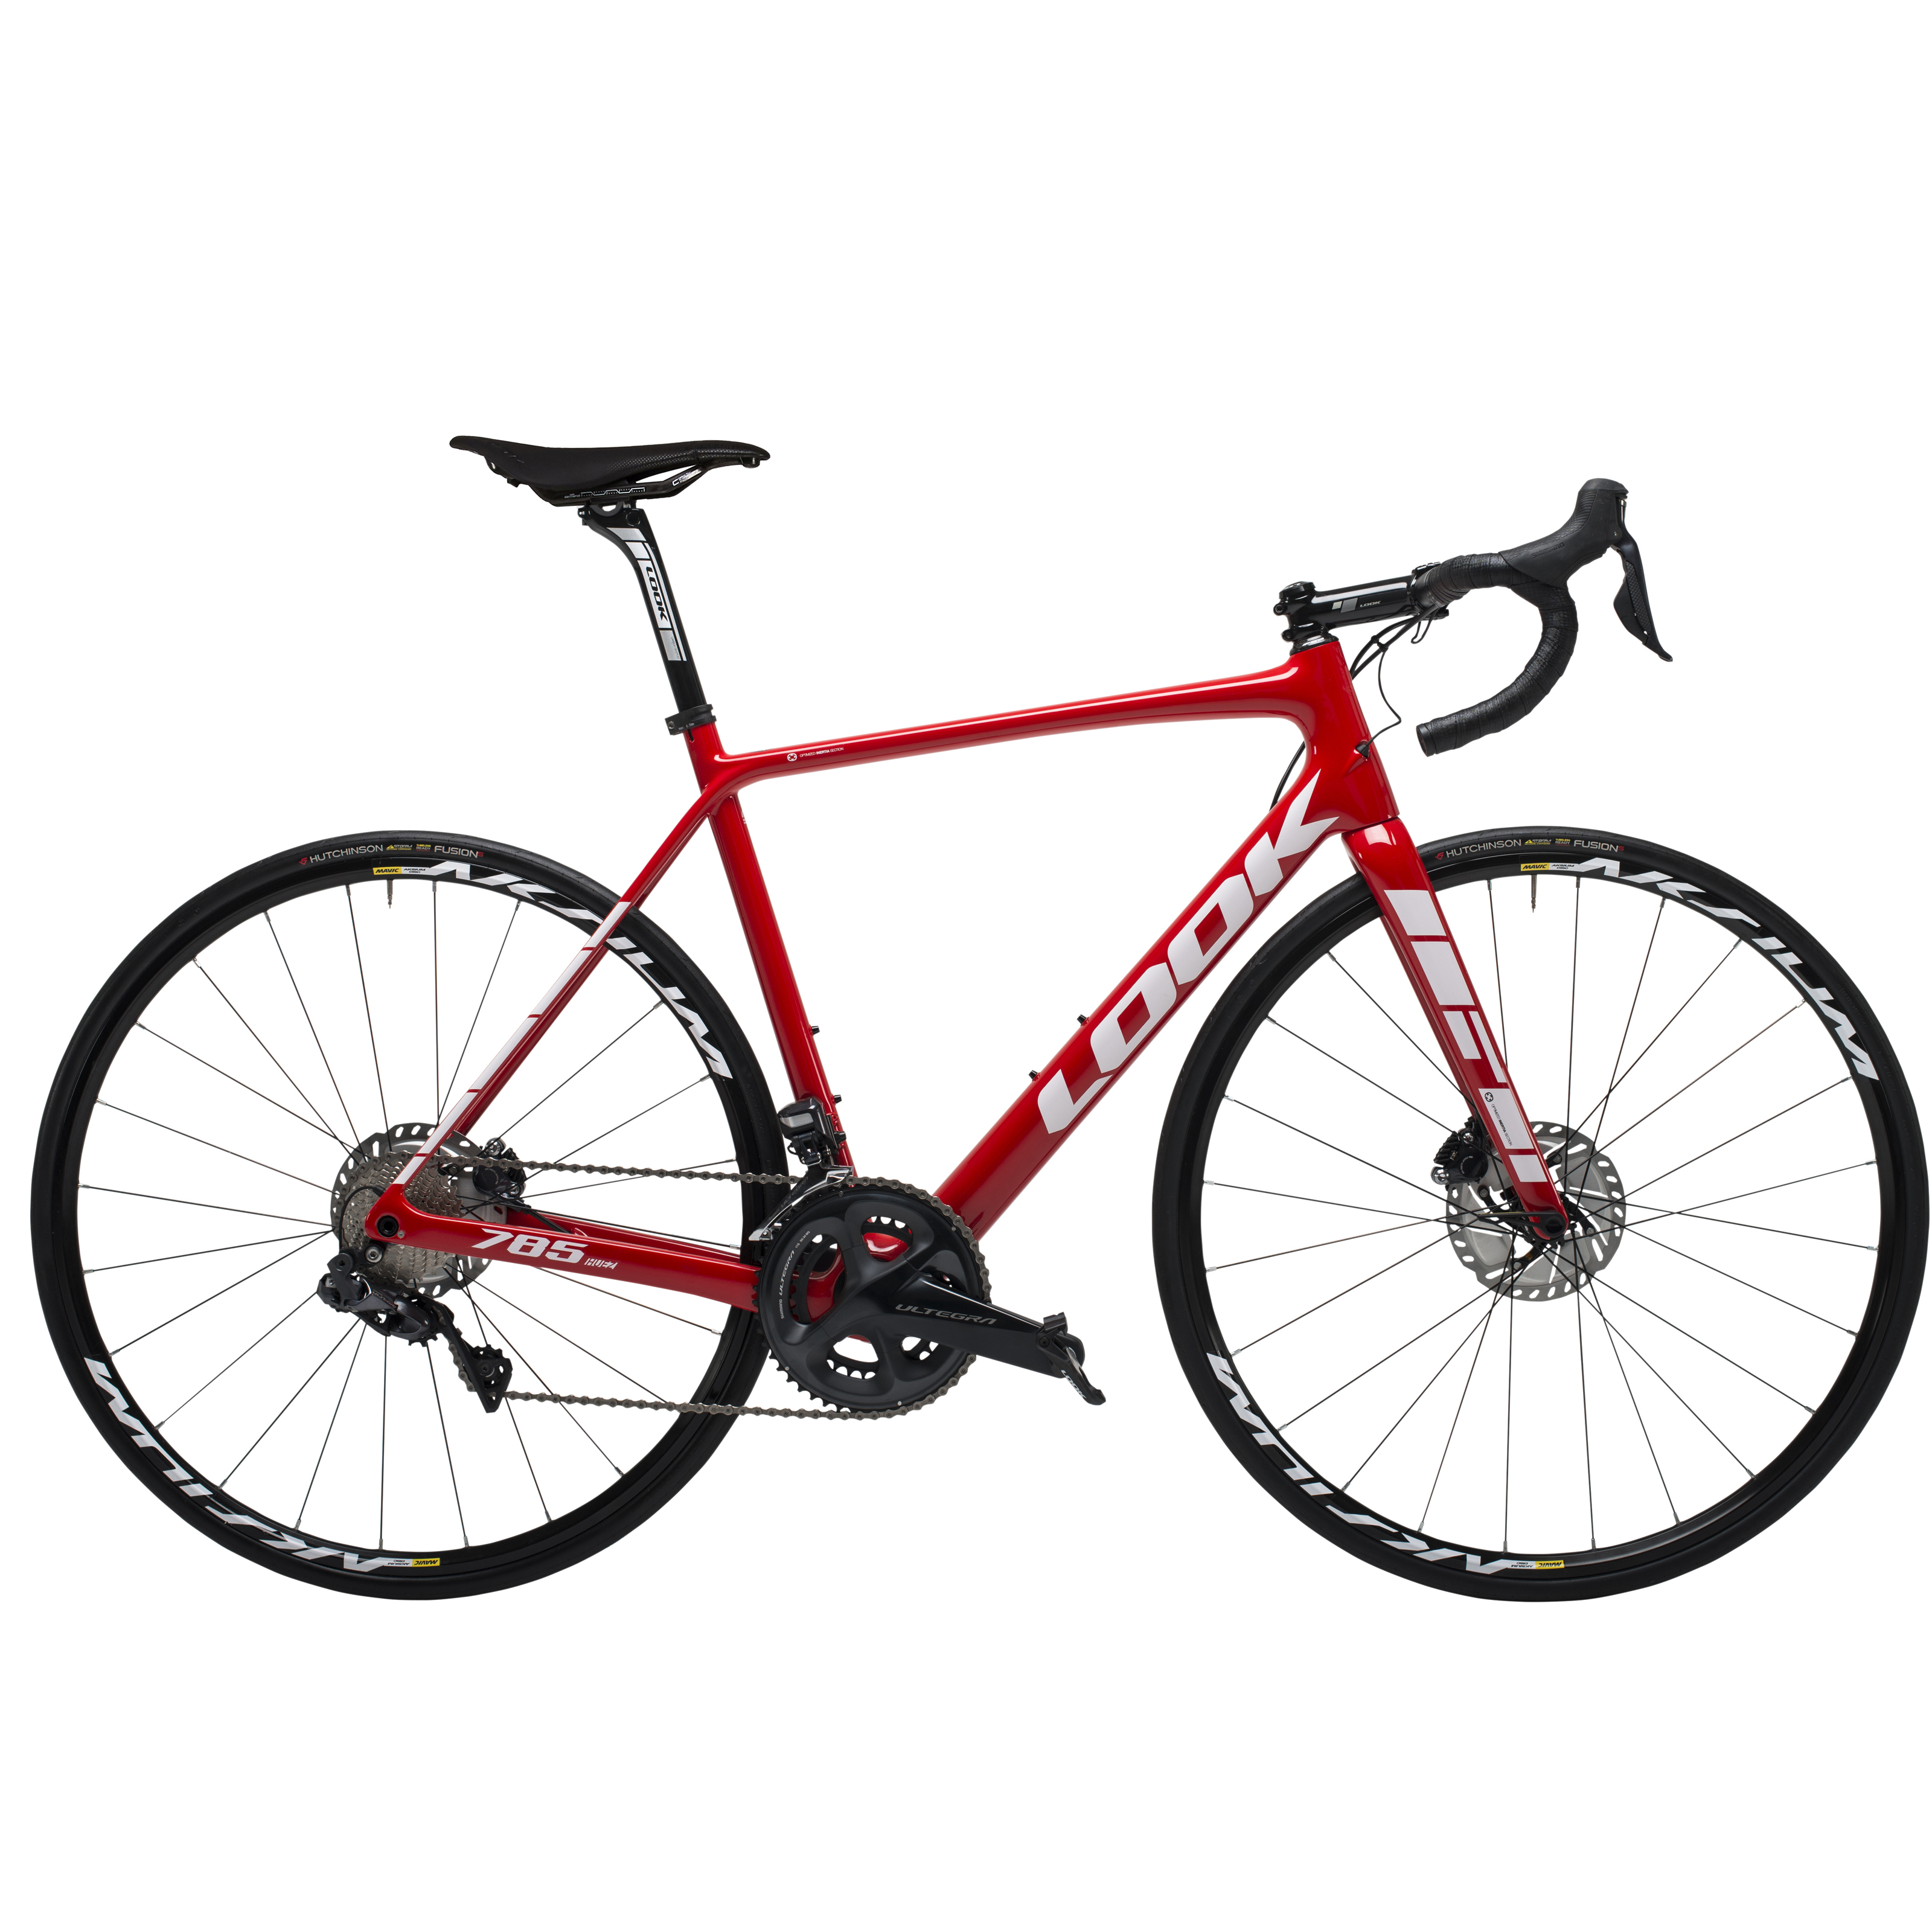 Bicicleta LOOK Ruta 785 HUEZ R700 22V. Shimano Ultegra DI2 Aksium Elite Tubeless Fibra de Carbono Rojo Brillante Talla:LL (00019514)